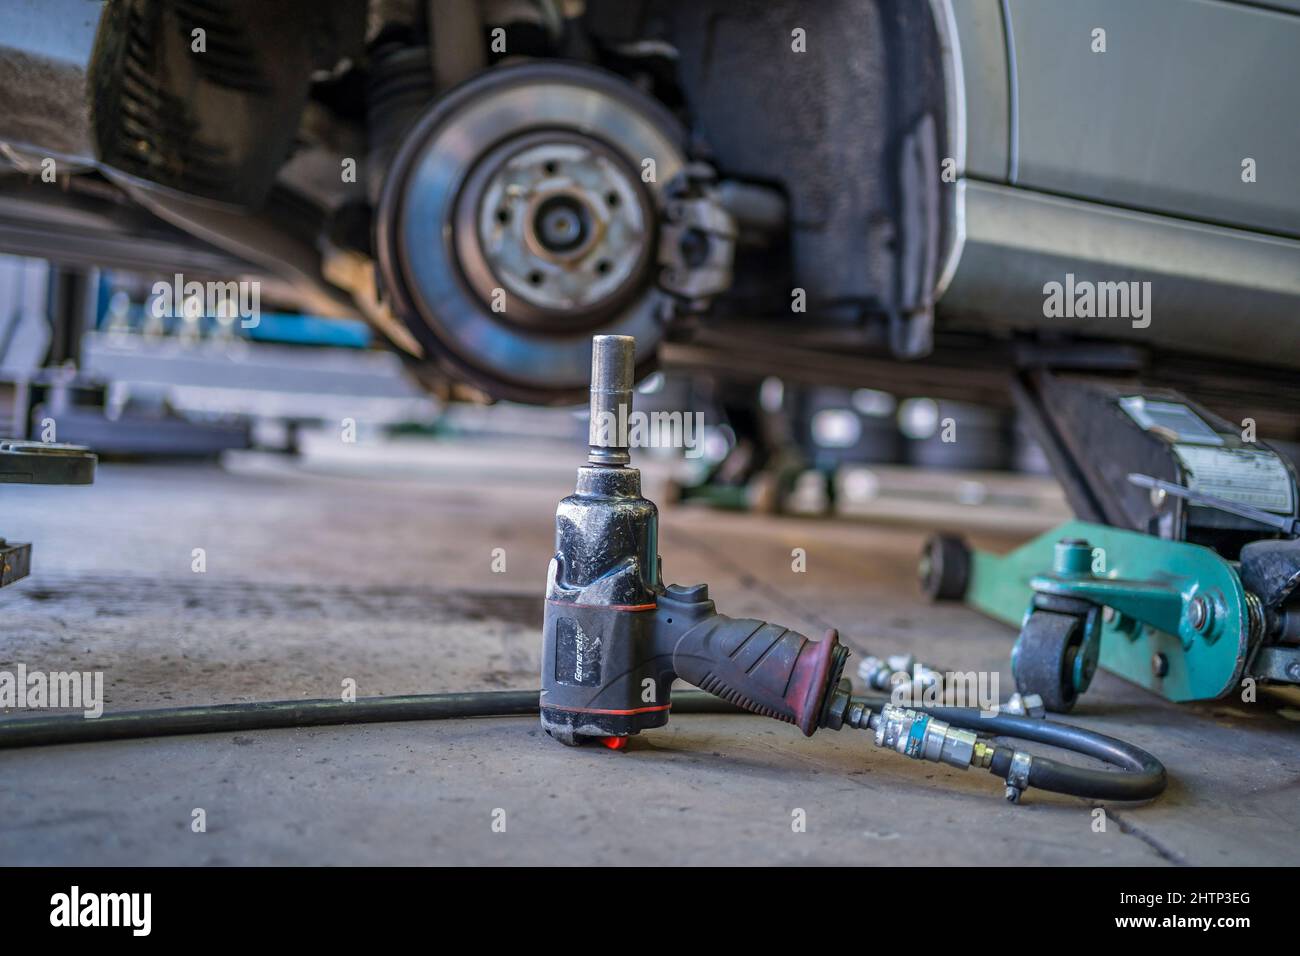 Ein Fahrzeug, das in einer Garage auf einem Wagenheber angehoben wurde, wobei das Rad entfernt wurde und ein Luftaufprallschlüssel im Vordergrund stand. Stockfoto